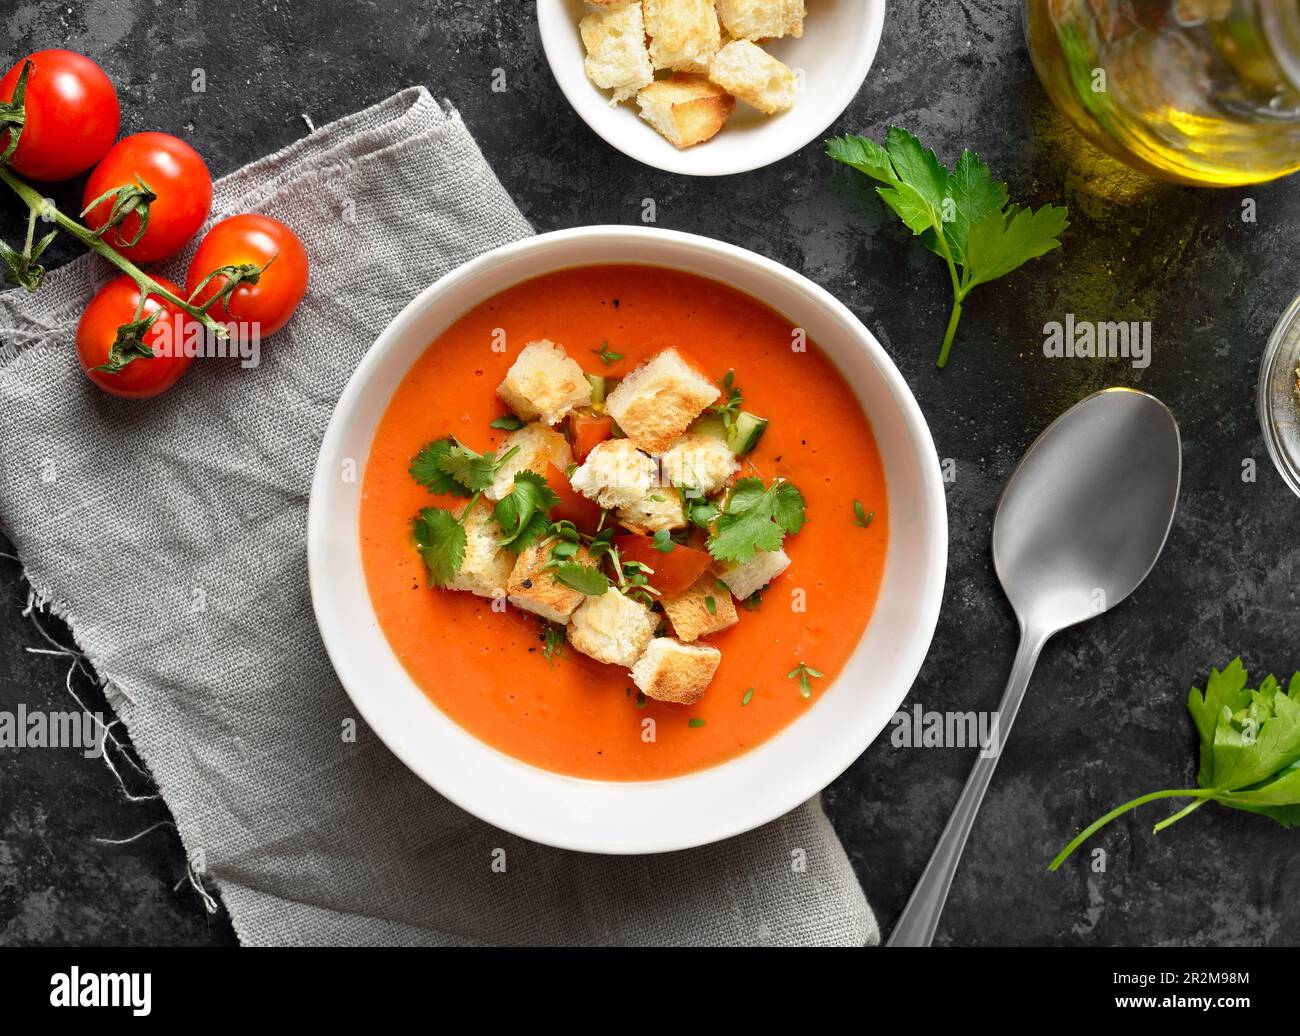 Tomaten-Gazpacho-Suppe mit Croutons in der Schüssel auf dunklem Steinhintergrund. Kalte Sommersuppe. Draufsicht, flach liegend Stockfoto